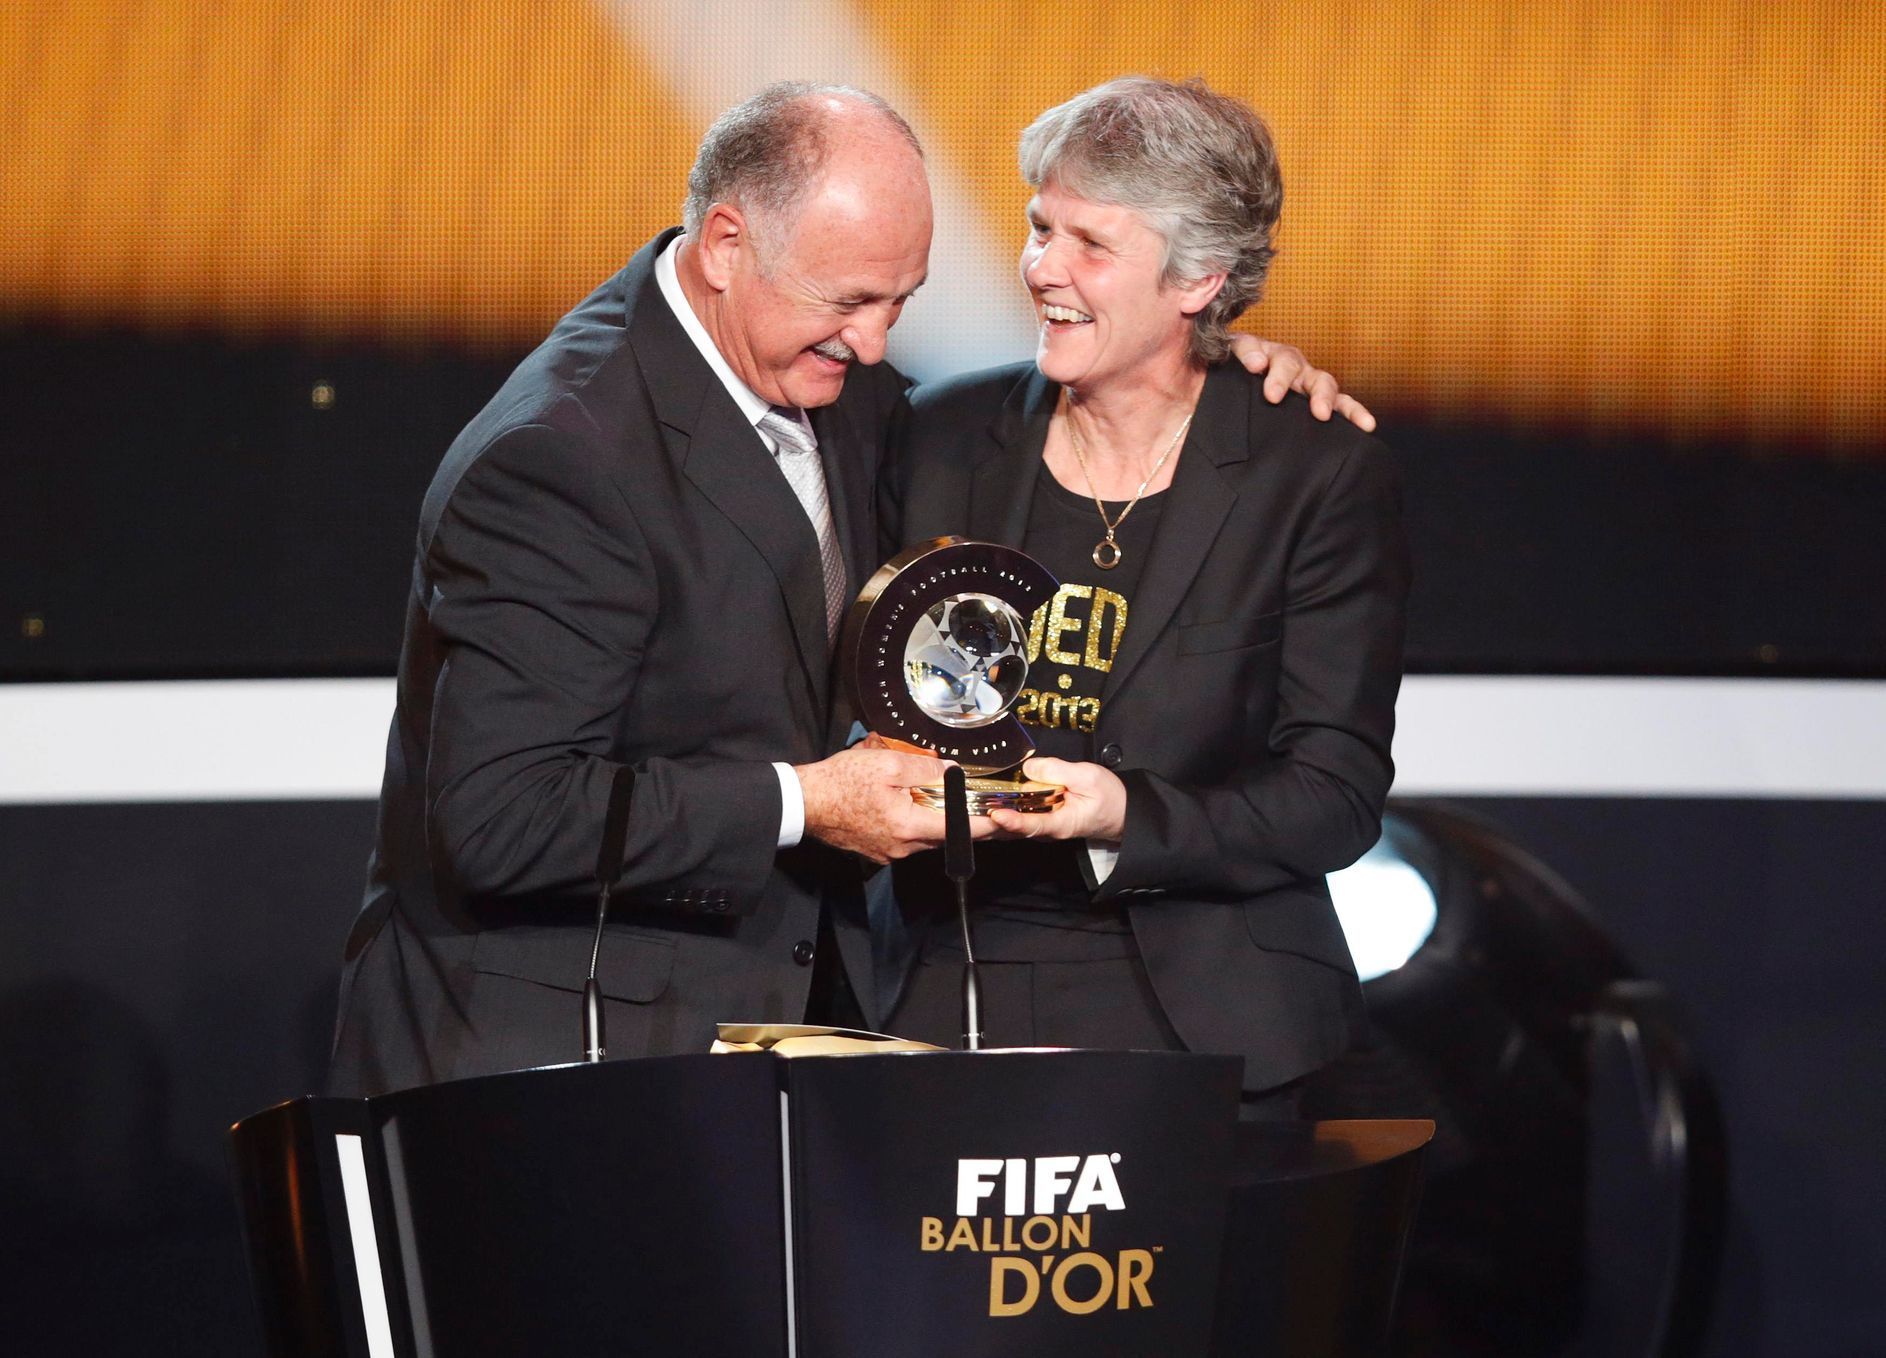 Galavečer FIFA - Zlatý míč pro rok 2012: Luiz Felipe Scolari a Pia Sundhageová